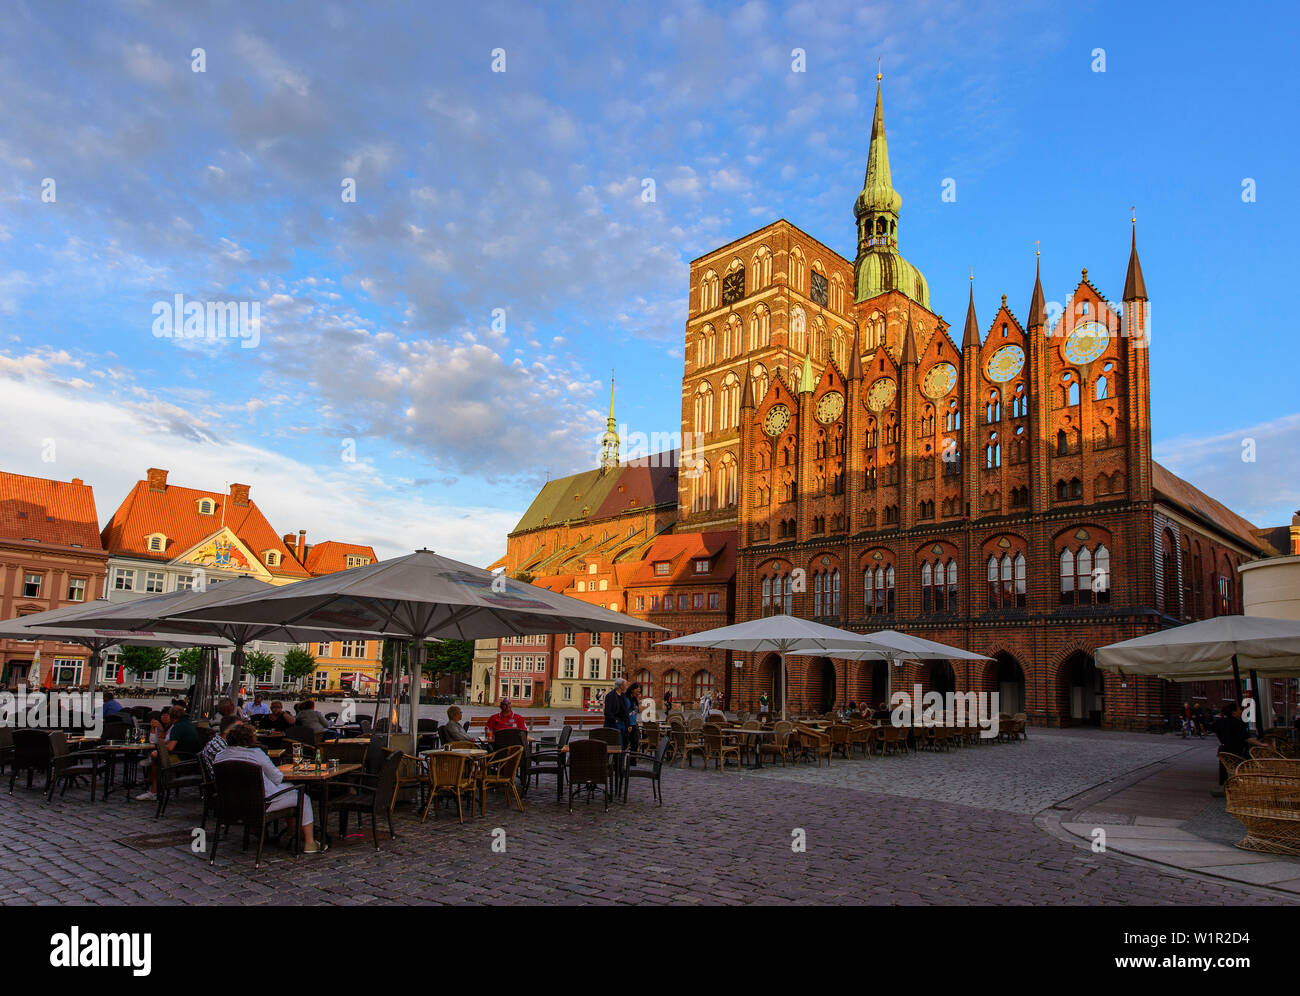 St. Nikolai und Rathaus am Alten Markt mit Catering, Stralsund, Ostseeküste, Mecklenburg-Vorpommern, Deutschland Stockfoto